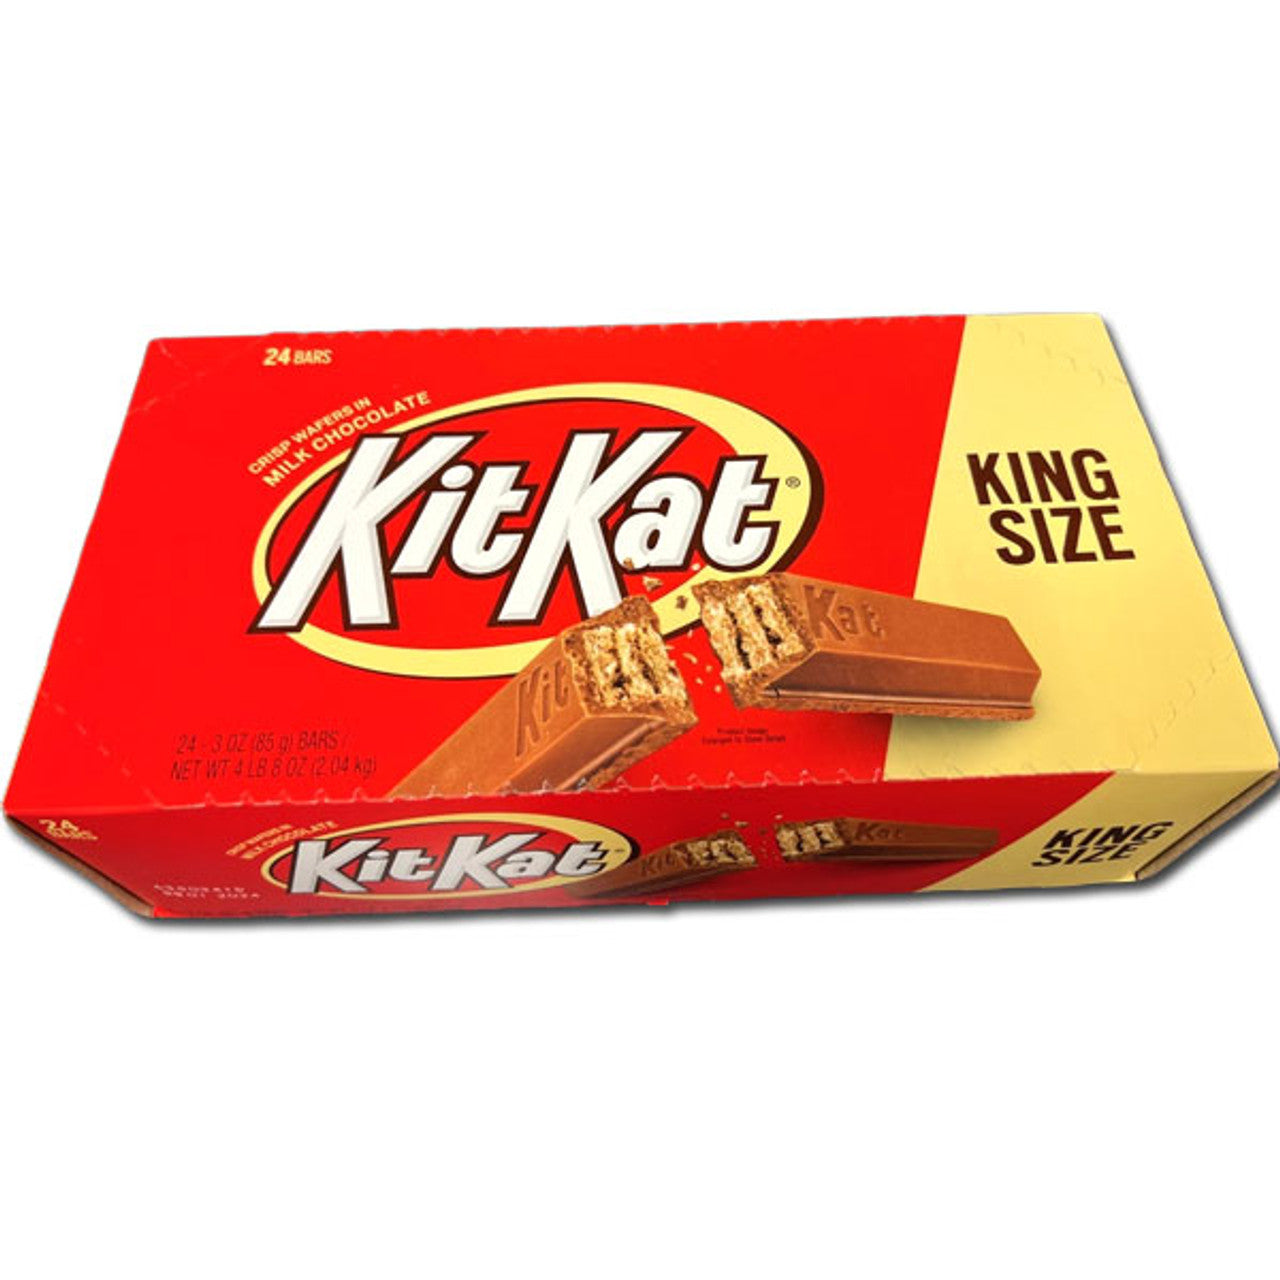 Kit Kat Milk Chocolate King 3oz - 24ct